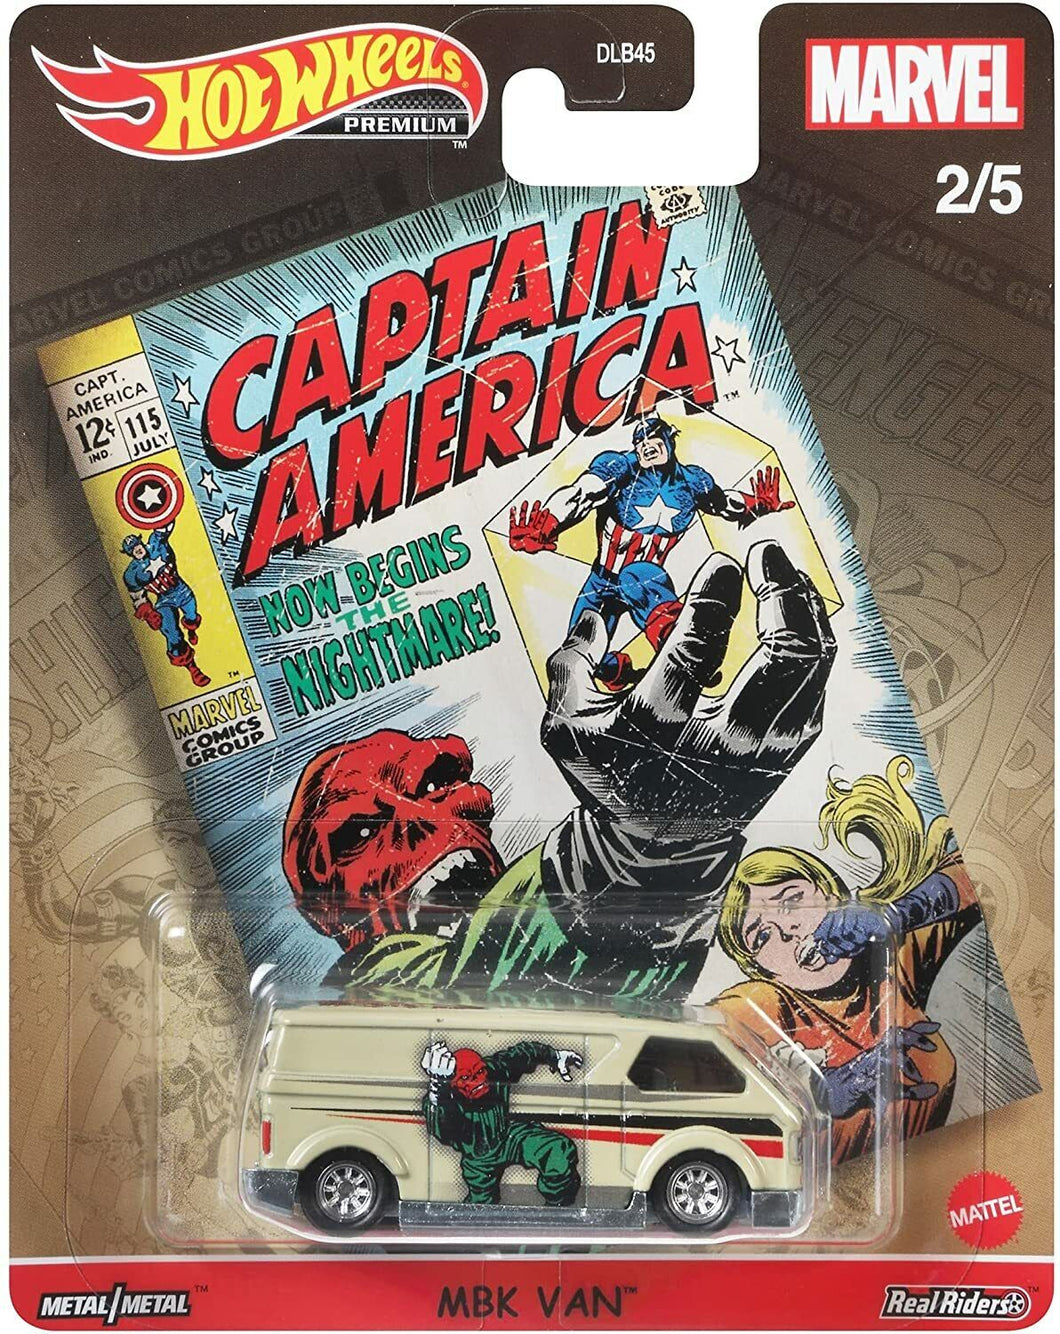 Hot Wheels Marvel Comics Pop Culture MBK Van Captain America Red Skull 2/5 - walk-of-famesports